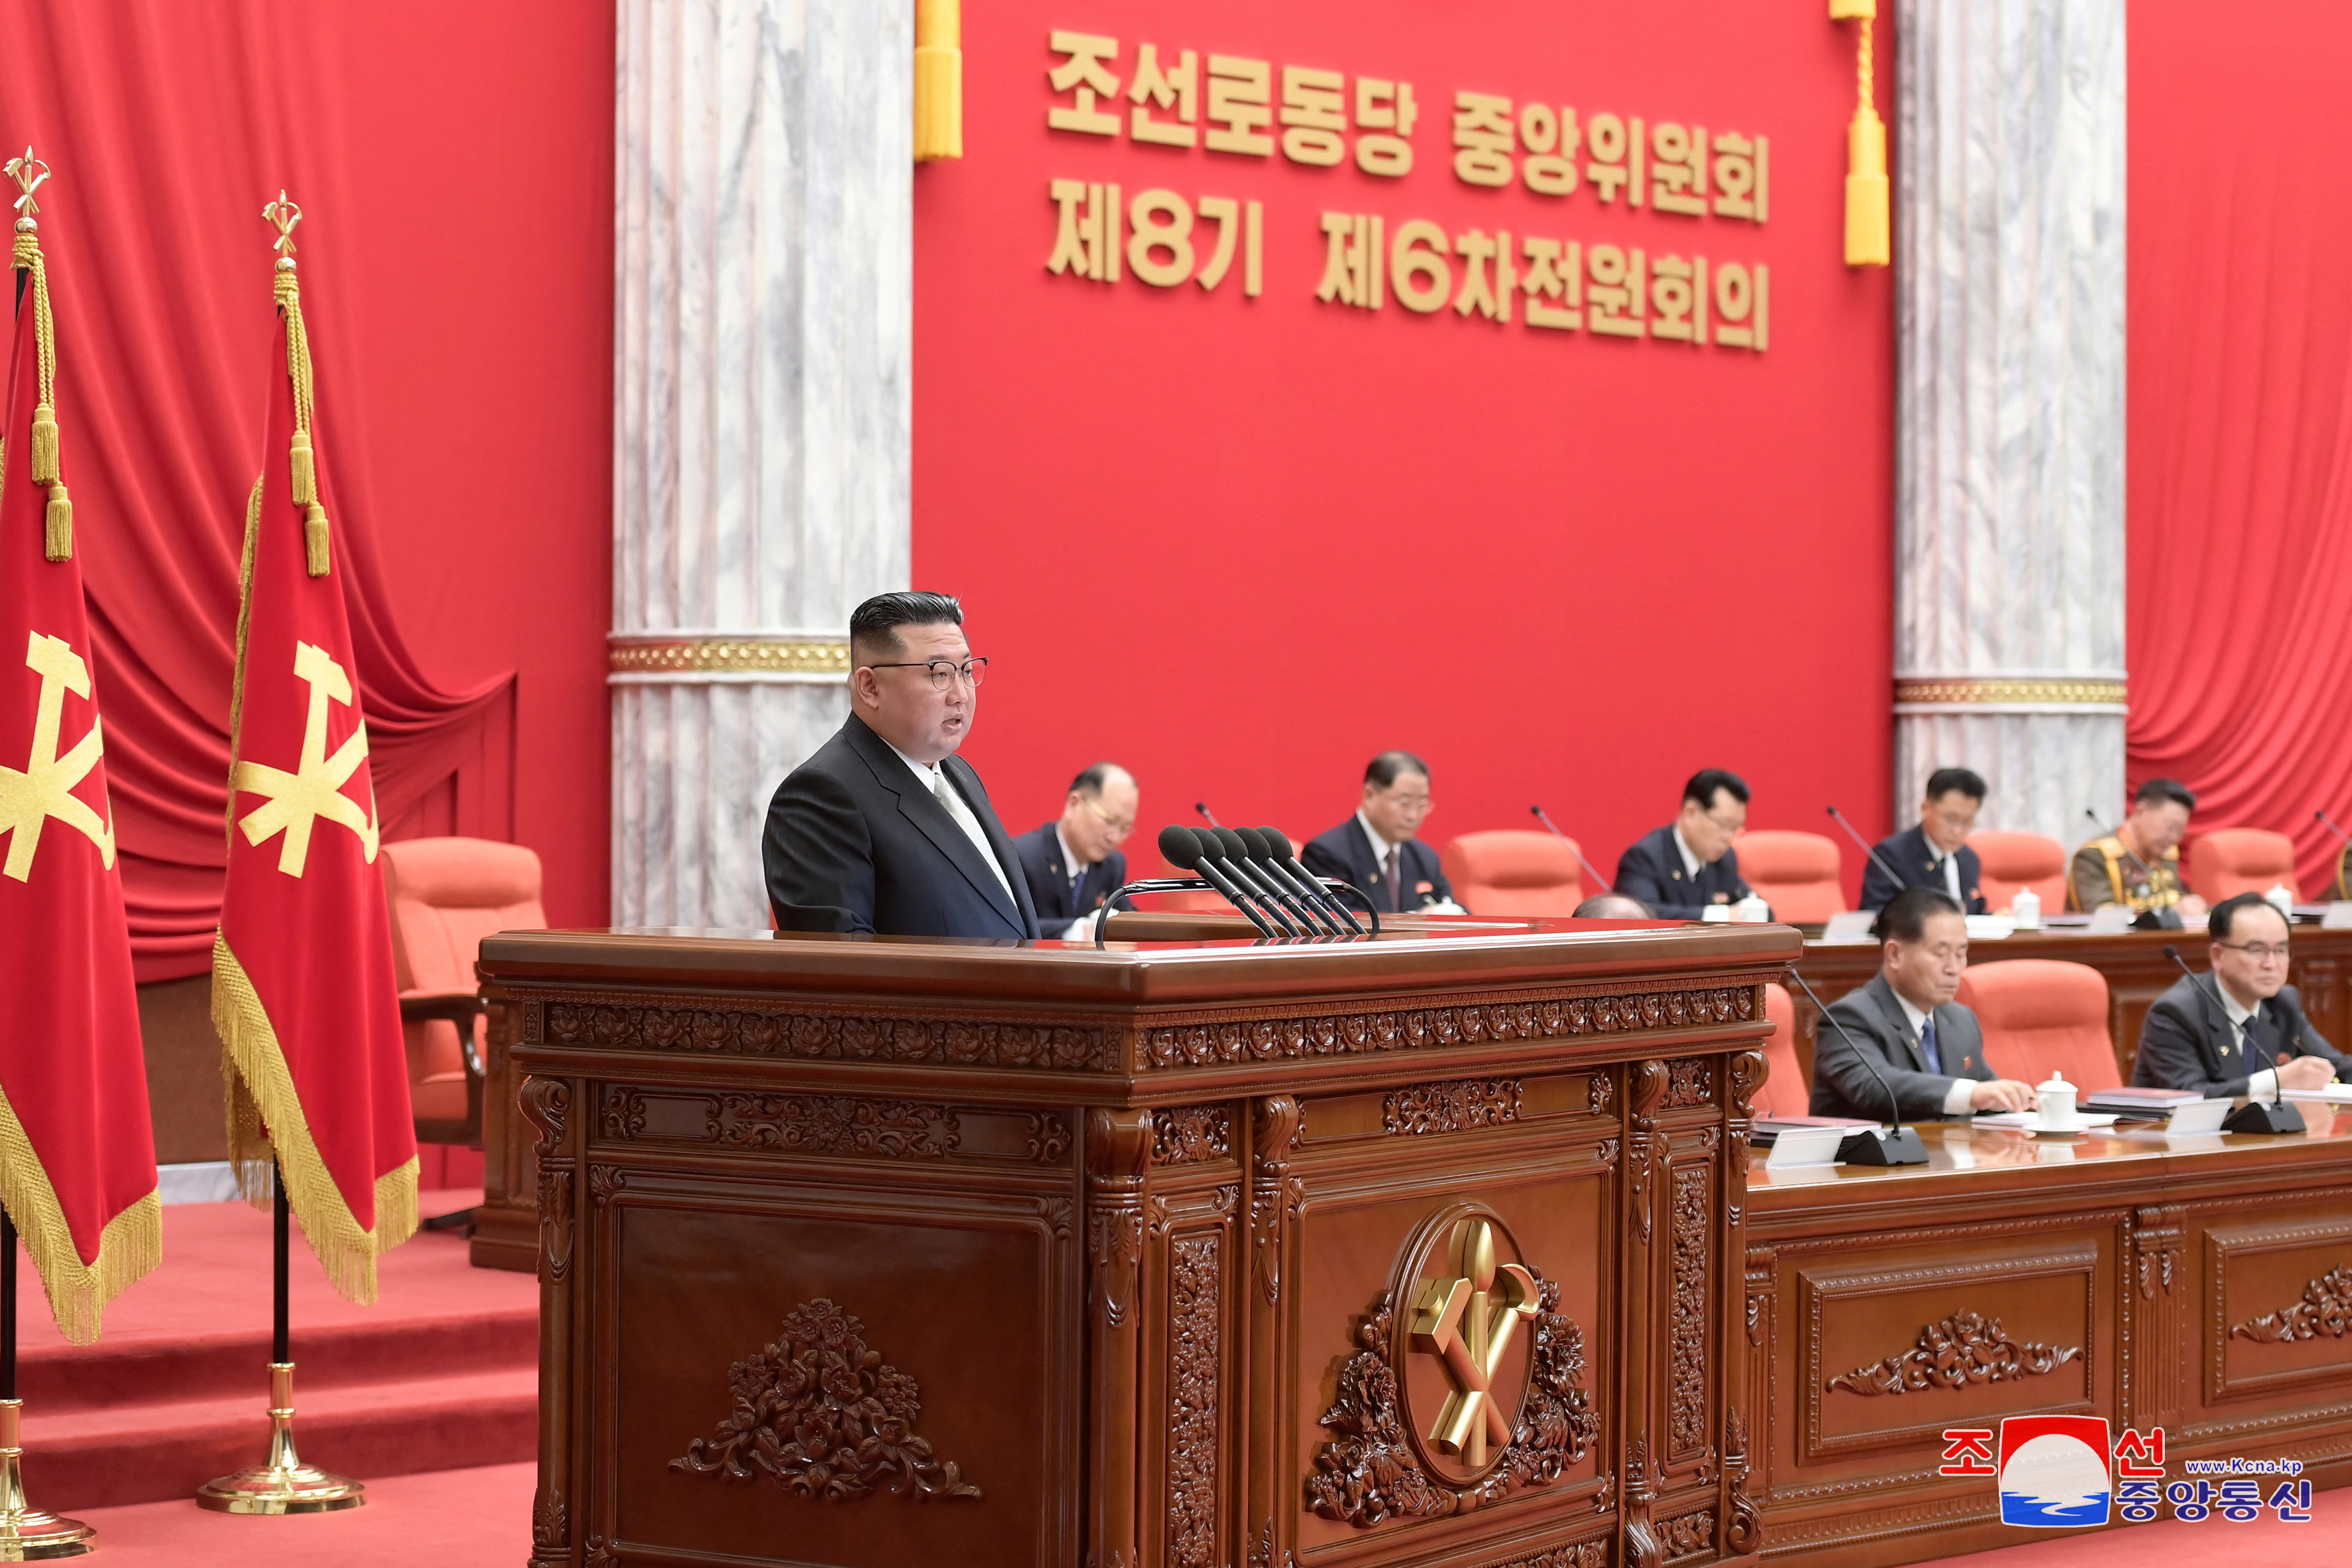 Kế hoạch phát triển kinh tế của Triều Tiên được công bố bởi Chủ tịch Kim Jong-un với những mục tiêu và chiến lược rõ ràng, đầy tham vọng. Với sự cải cách và đột phá trong các lĩnh vực quan trọng, Triều Tiên đang trở thành một điểm đến hấp dẫn cho các nhà đầu tư. Hãy cùng thưởng thức hình ảnh liên quan đến kế hoạch phát triển kinh tế này.